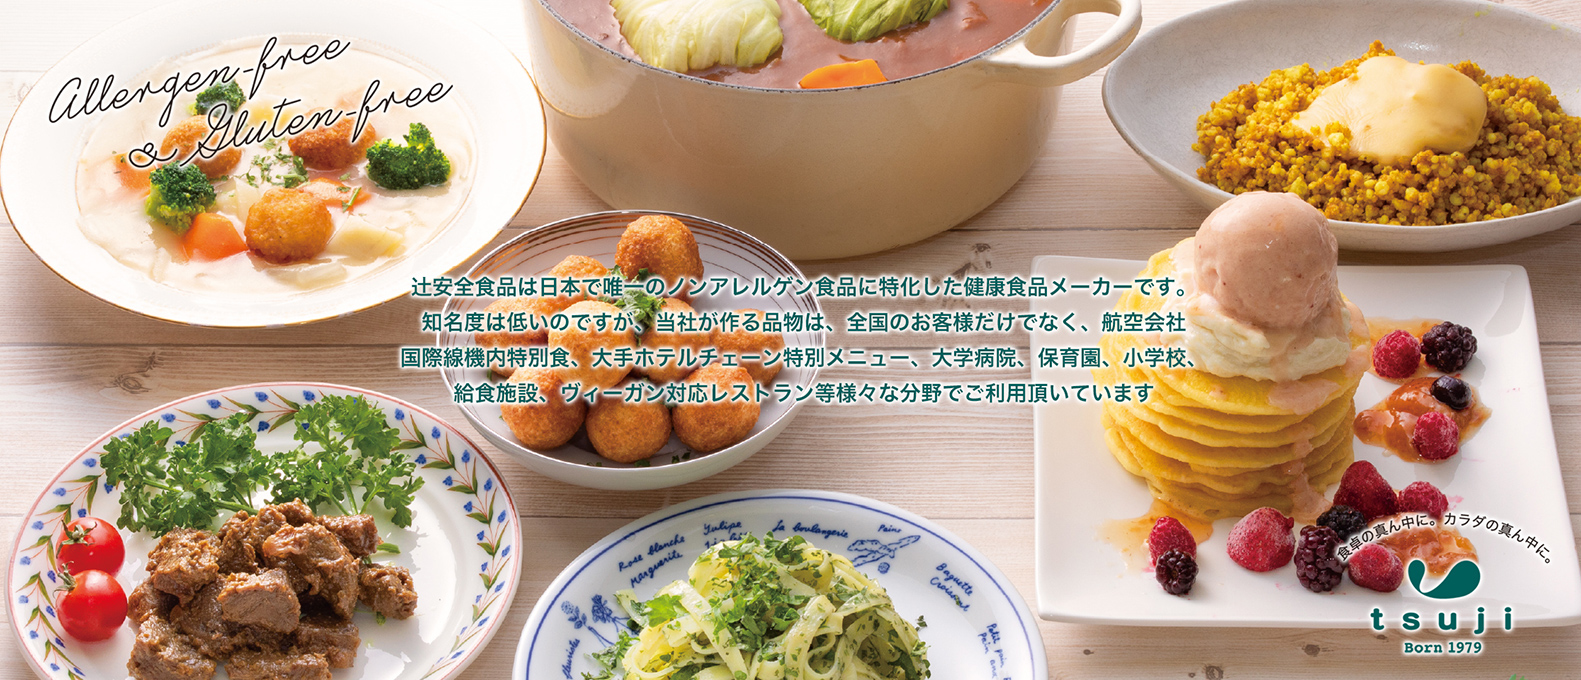 辻安全食品は日本で唯一のノンアレルゲン食品に特化した健康食品メーカーです。当社が作る品物は、全国のお客様だけでなく、航空会社国際線機内特別食、大手ホテルチェーン特別メニュー、大学病院、保育園、小学校、給食施設、ヴィーガン対応レストラン等様々な分野でご利用頂いています